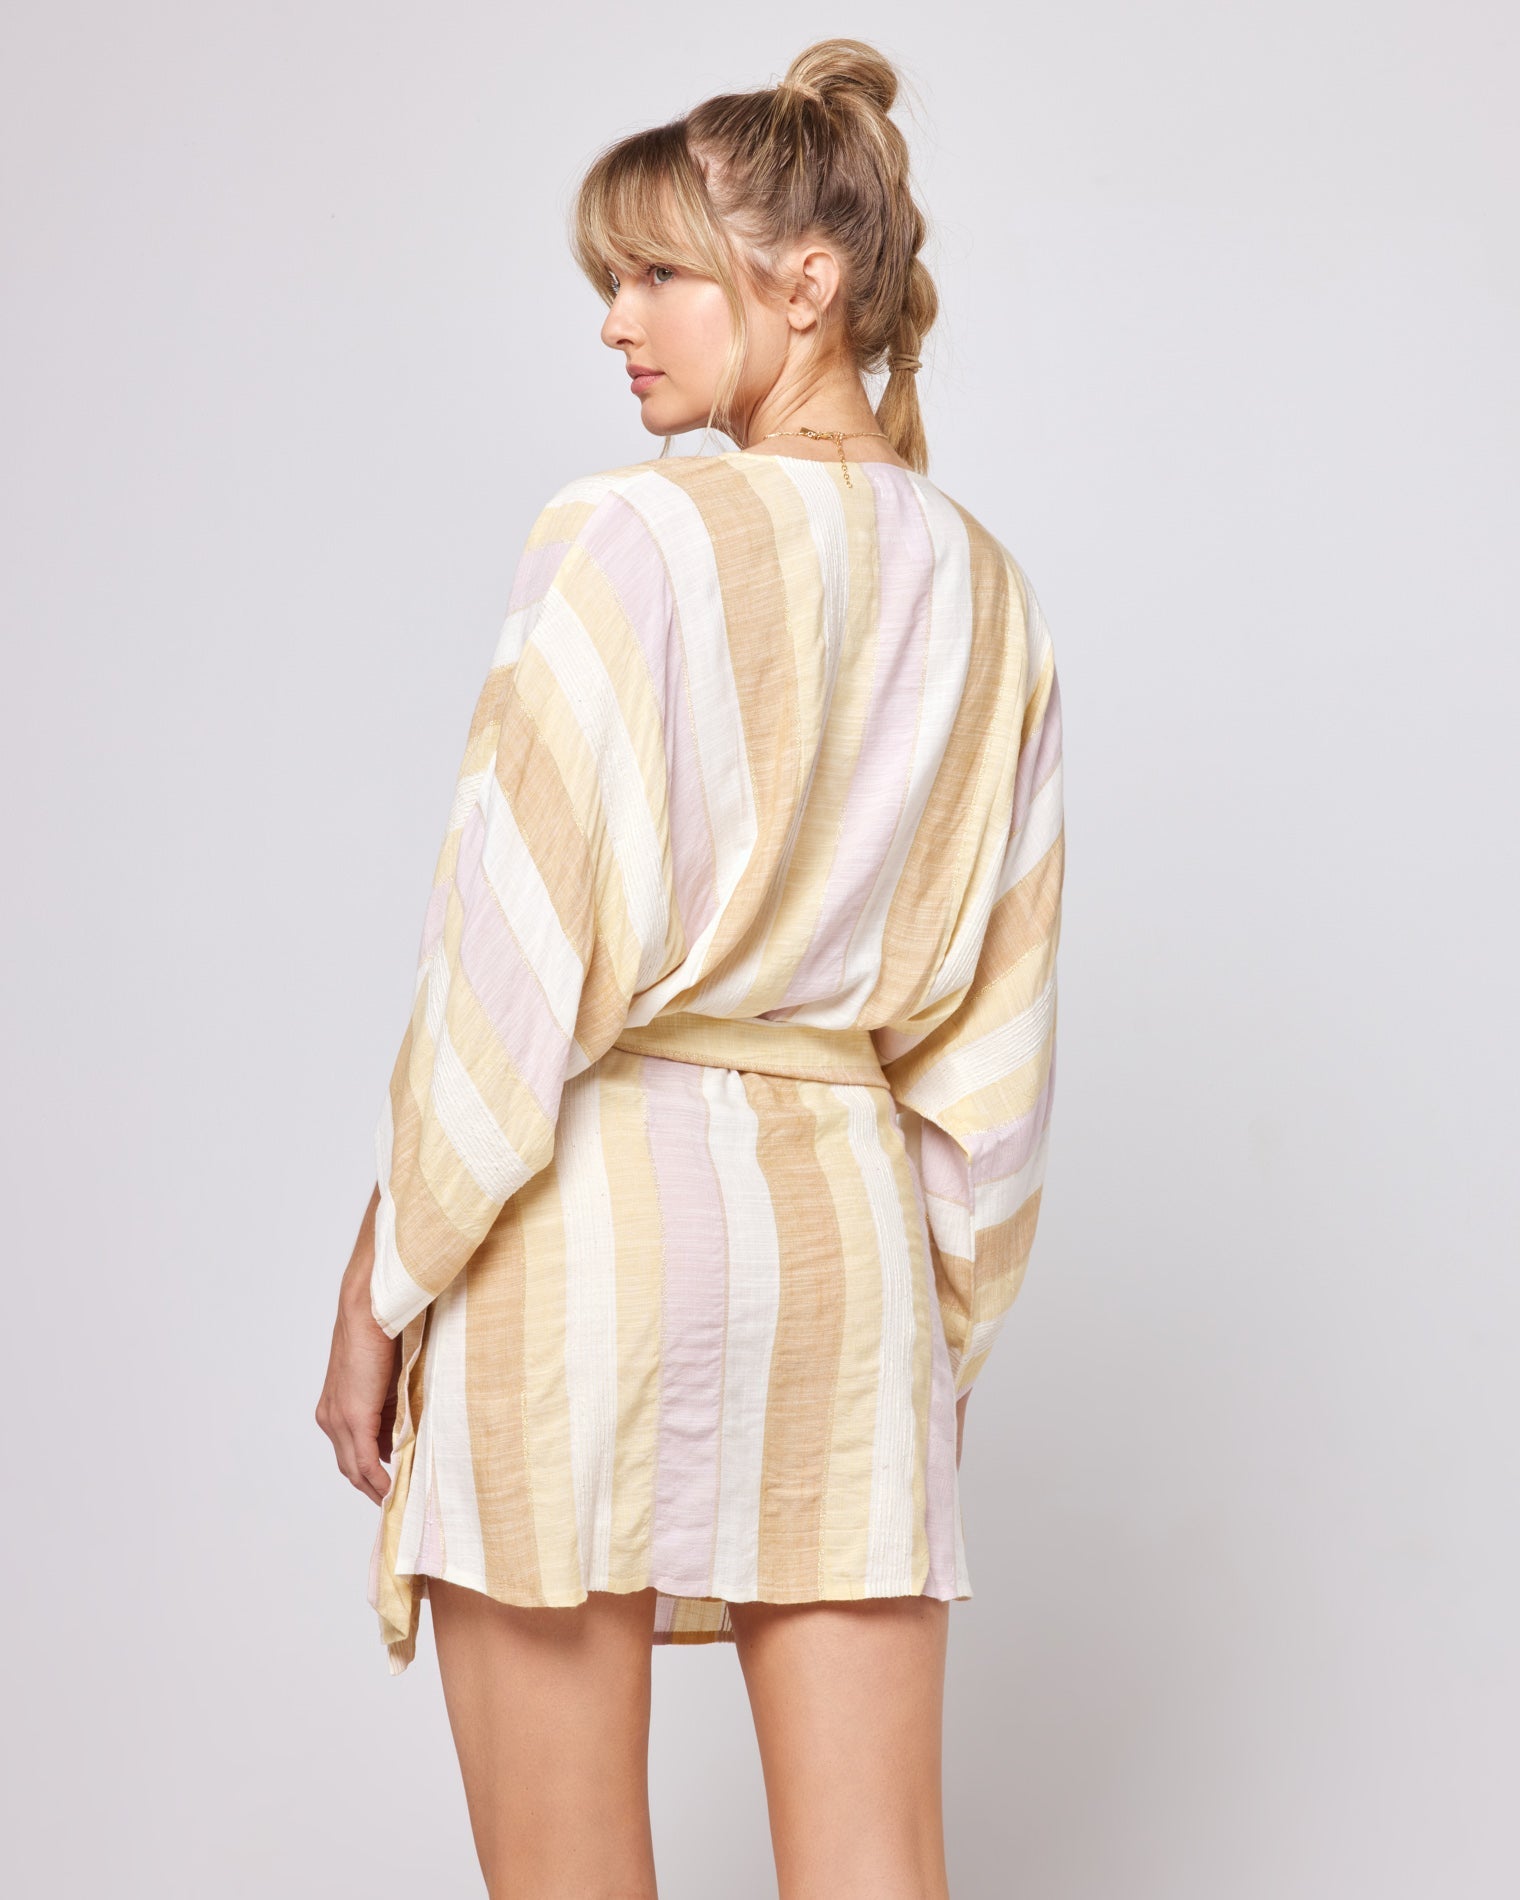 Pfeiffer Dress Golden Days | Model: Lura (size: S)